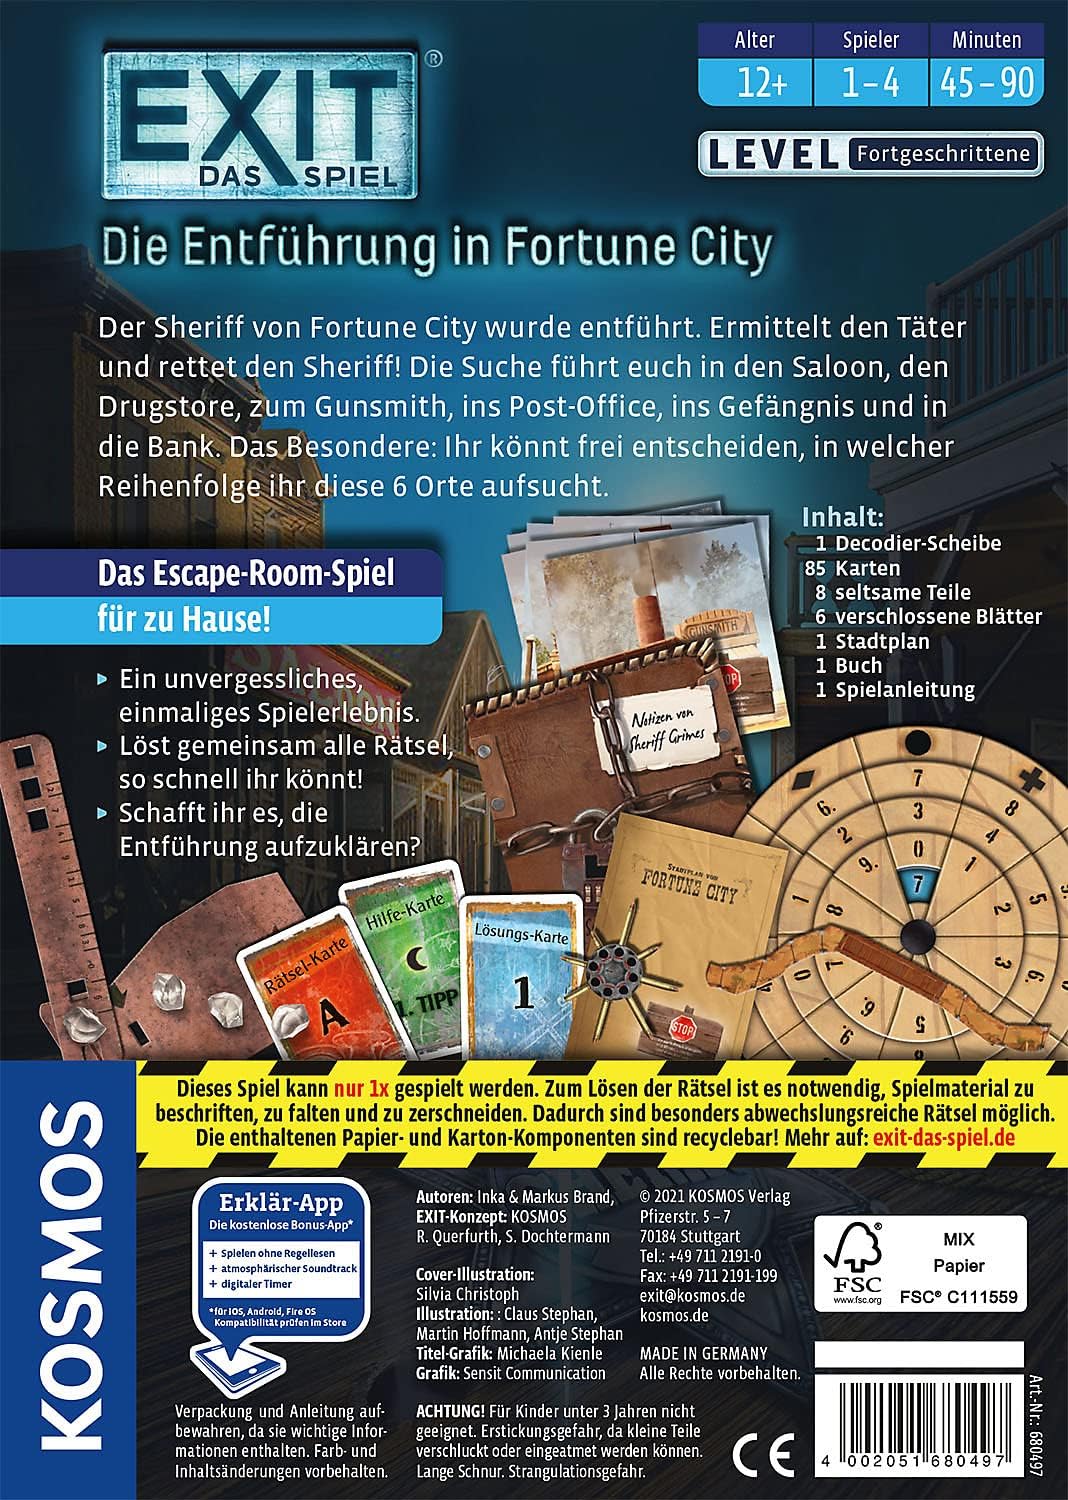 Kosmos 680497 EXIT® - Das Spiel - Die Entführung in Fortune City, Level: Fortgeschrittene, Escape Room Spiel, EXIT Game für 1-4 Spieler ab 12 Jahre, EIN einmaliges Gesellschaftsspiel